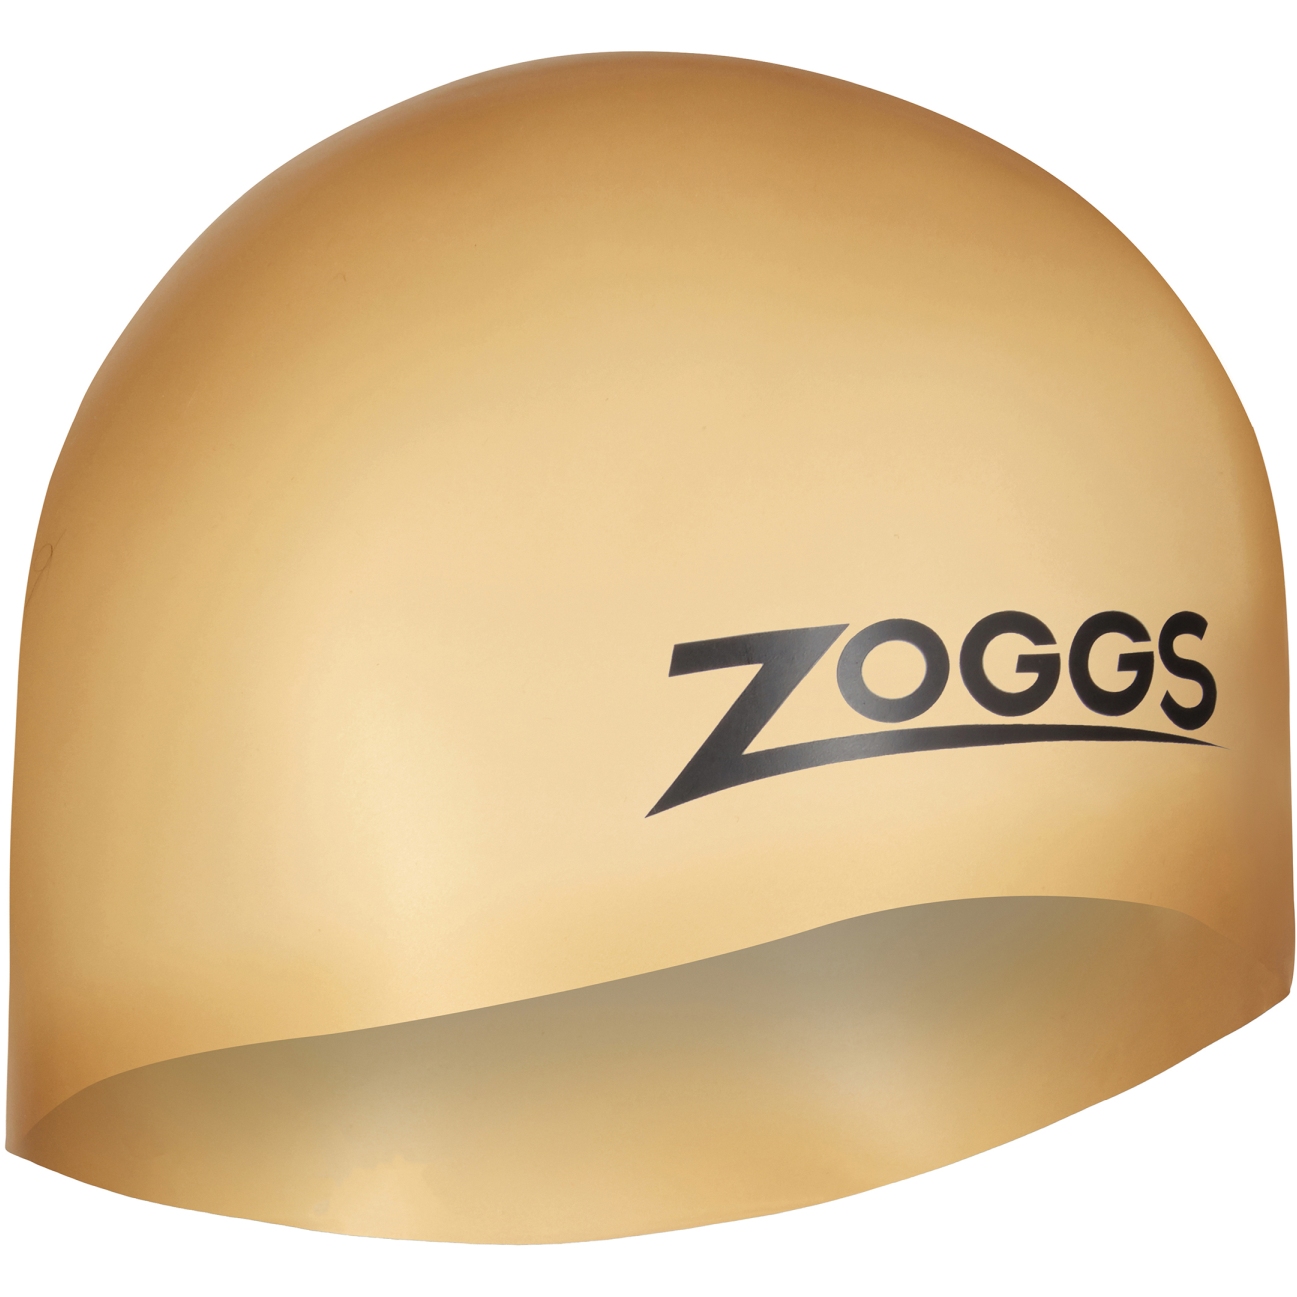 Bild von Zoggs Easy Fit Silicone Badekappe - gold